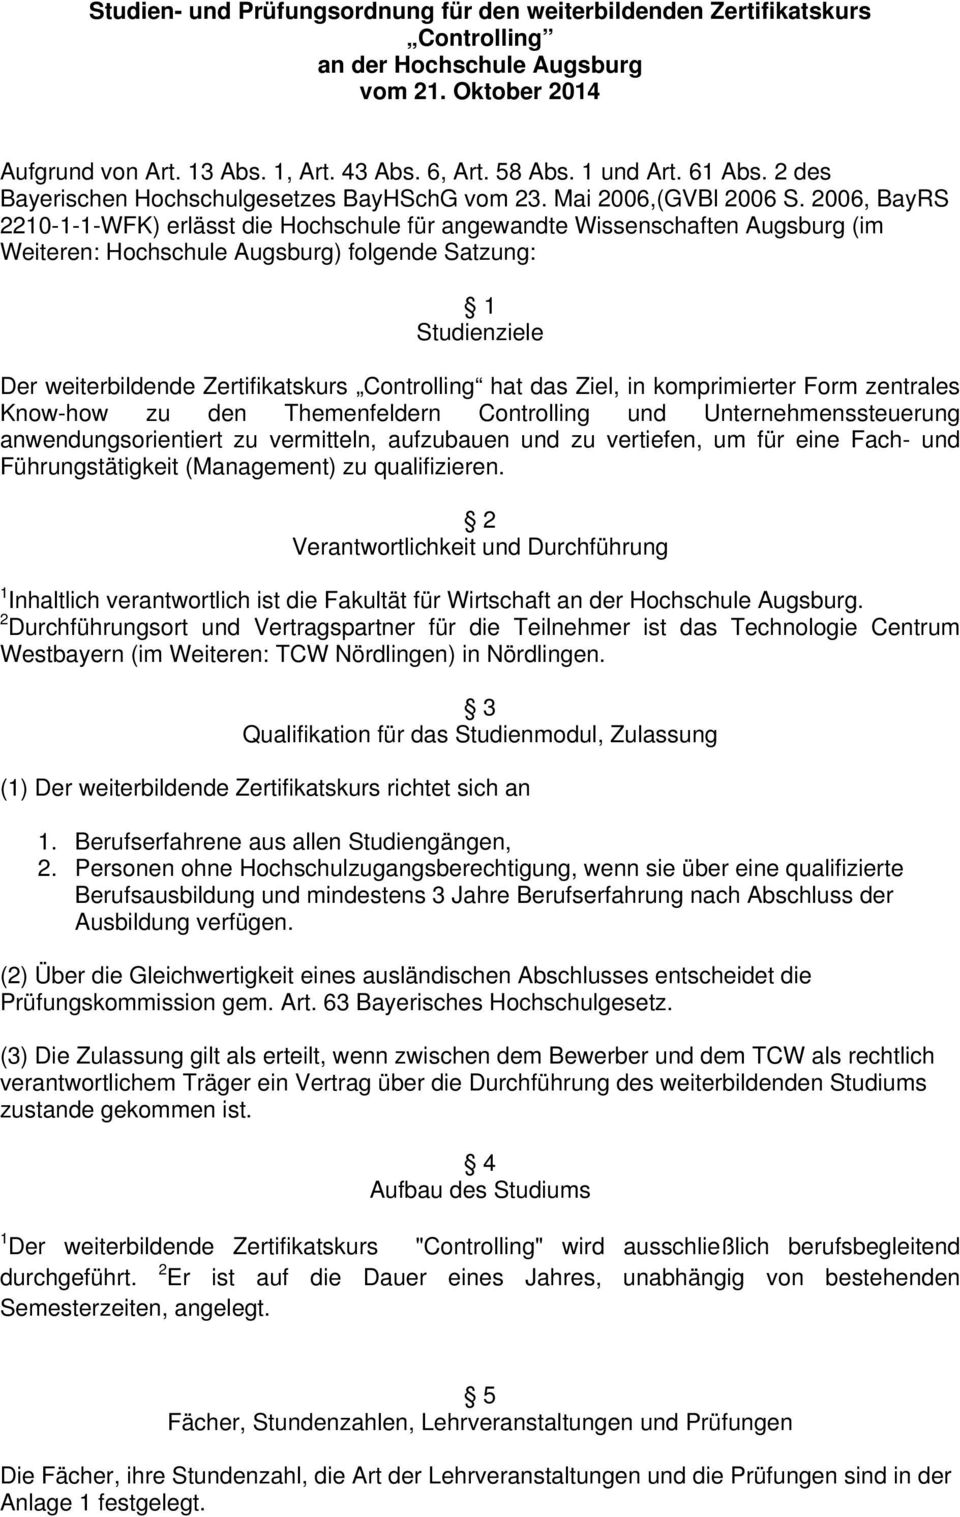 2006, BayRS 2210-1-1-WFK) erlässt die Hochschule für angewandte Wissenschaften Augsburg (im Weiteren: Hochschule Augsburg) folgende Satzung: 1 Studienziele Der weiterbildende Zertifikatskurs hat das